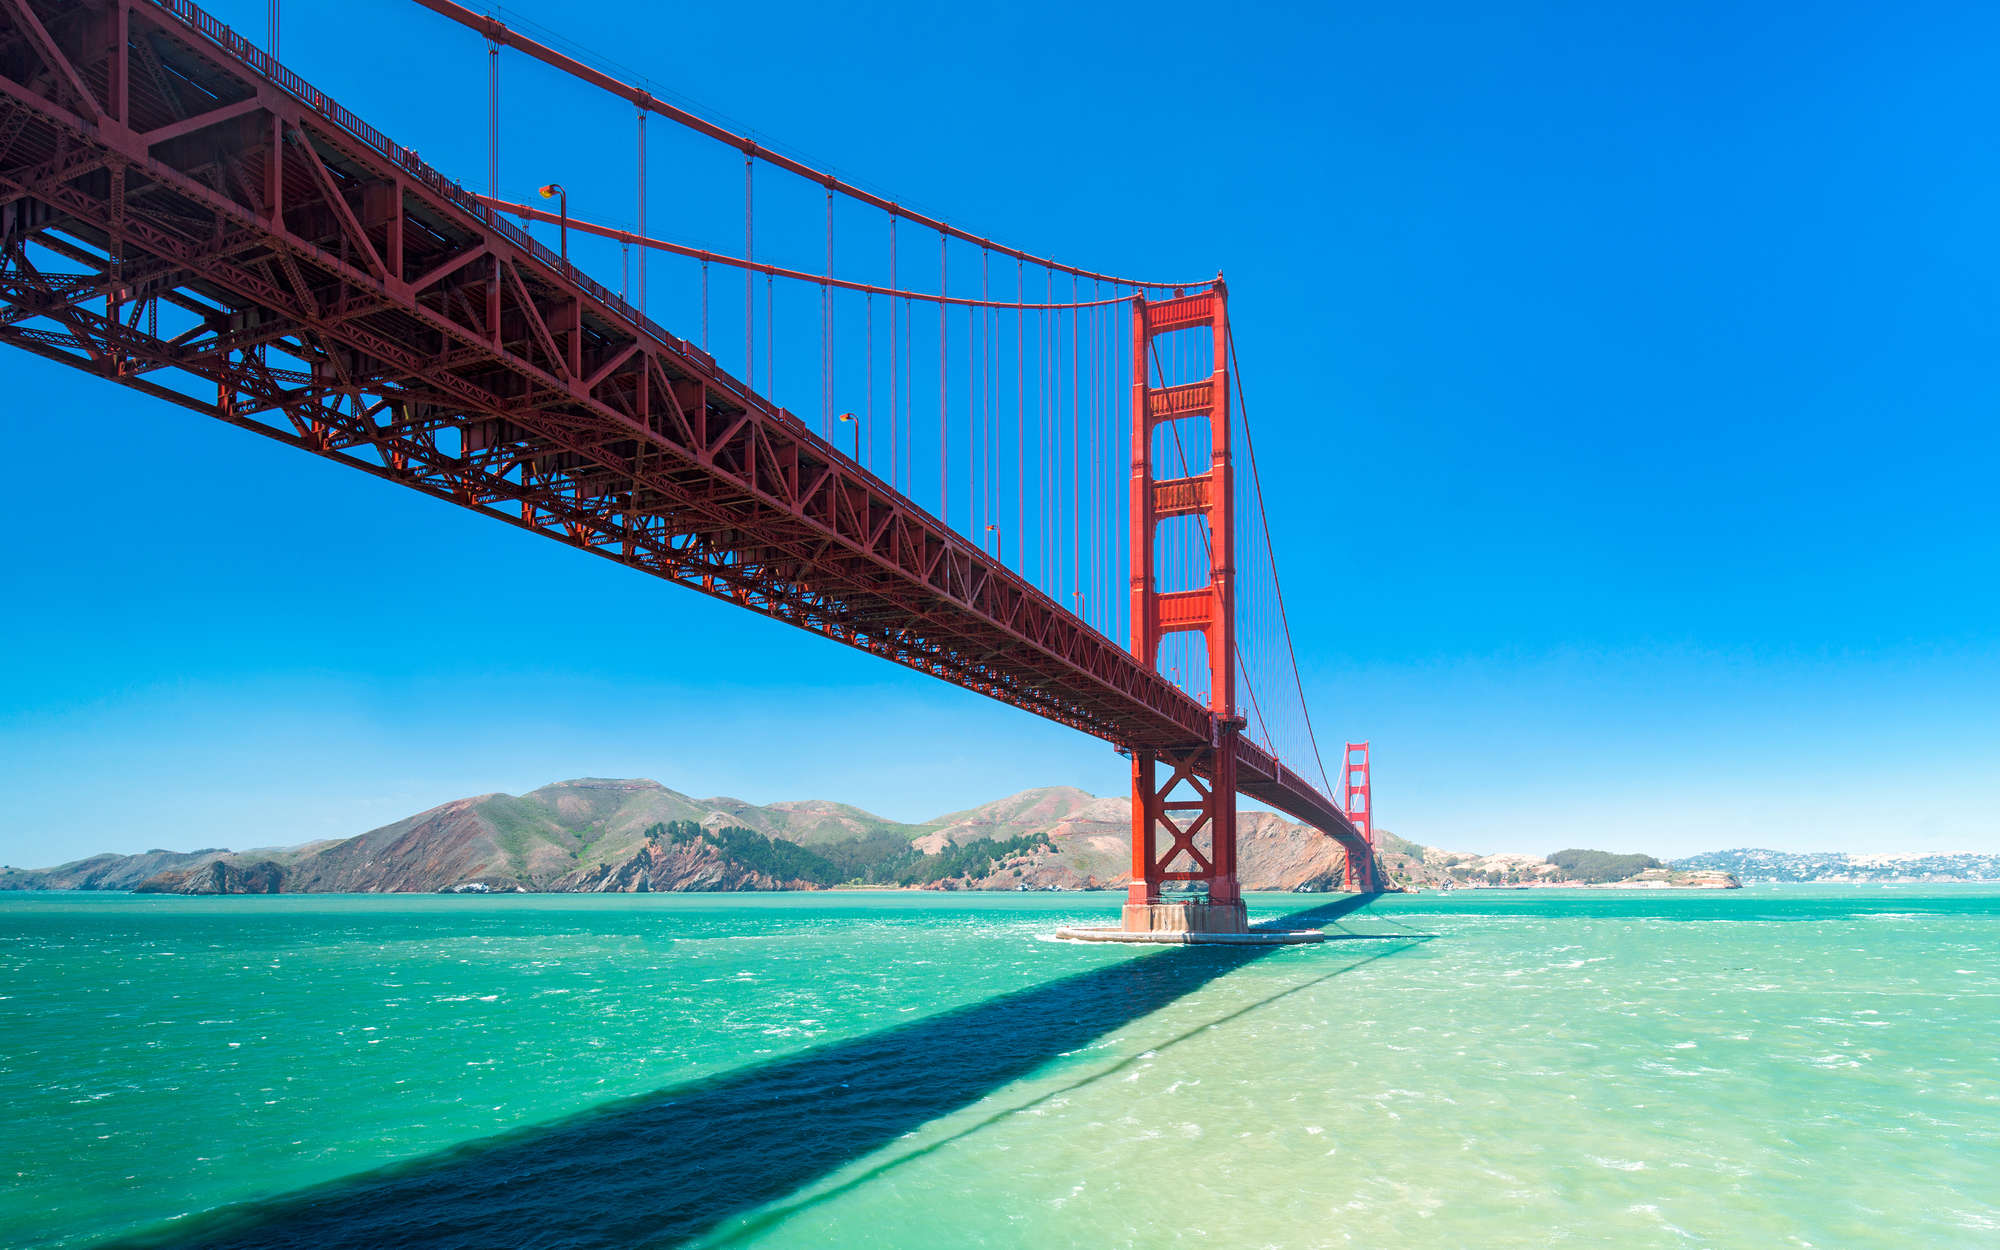             Fototapete Golden Gate Bridge in San Francisco – Strukturiertes Vlies
        